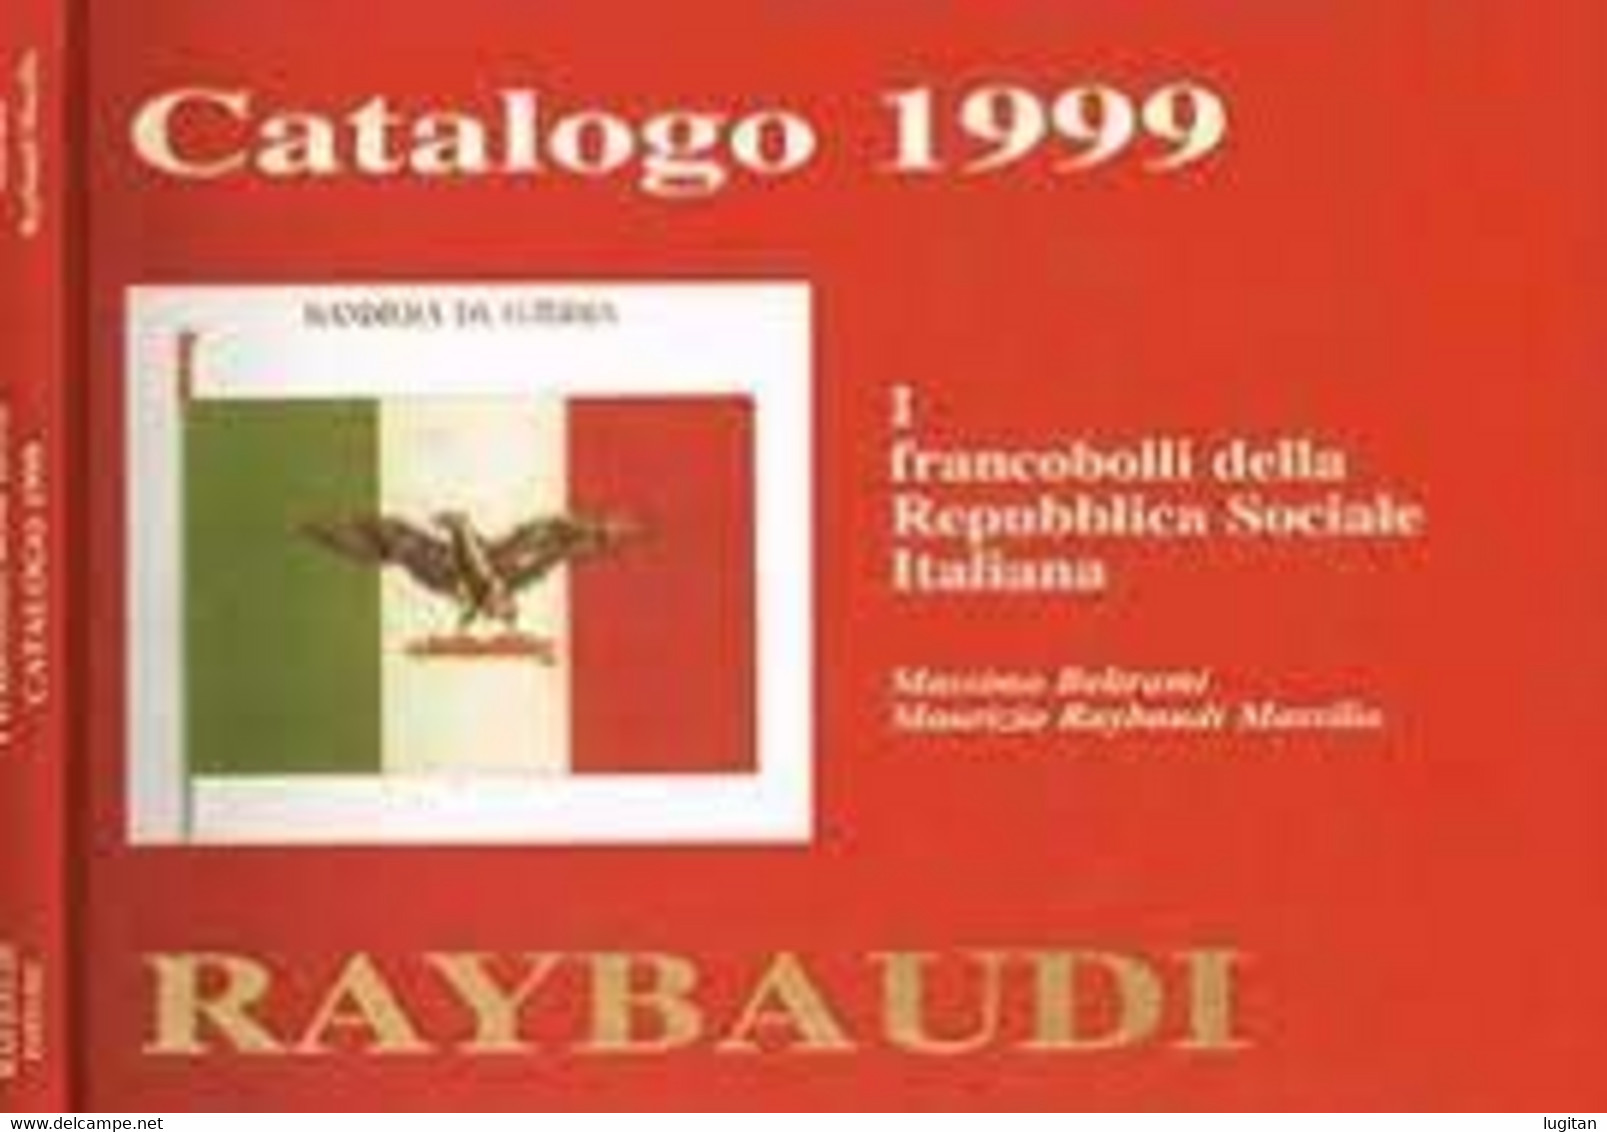 CATALOGO 1999 - I FRANCOBOLLI DELLE REPUBBLICA SOCIALE - RAYBAUDI - Weltkrieg 1939-45